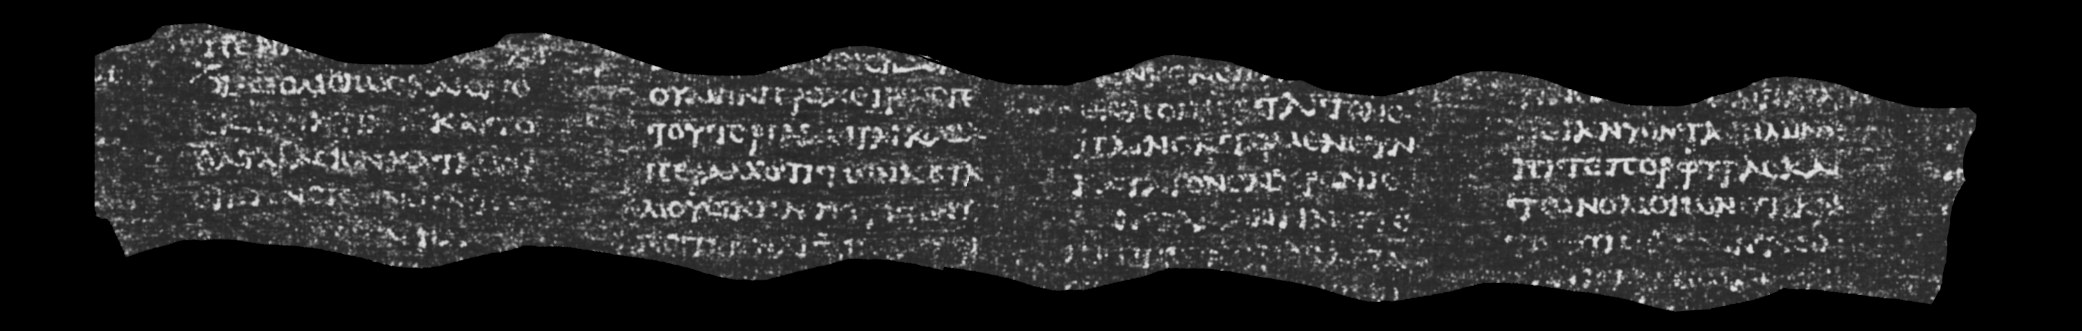 Scan of interior of Herculaneum papyrus